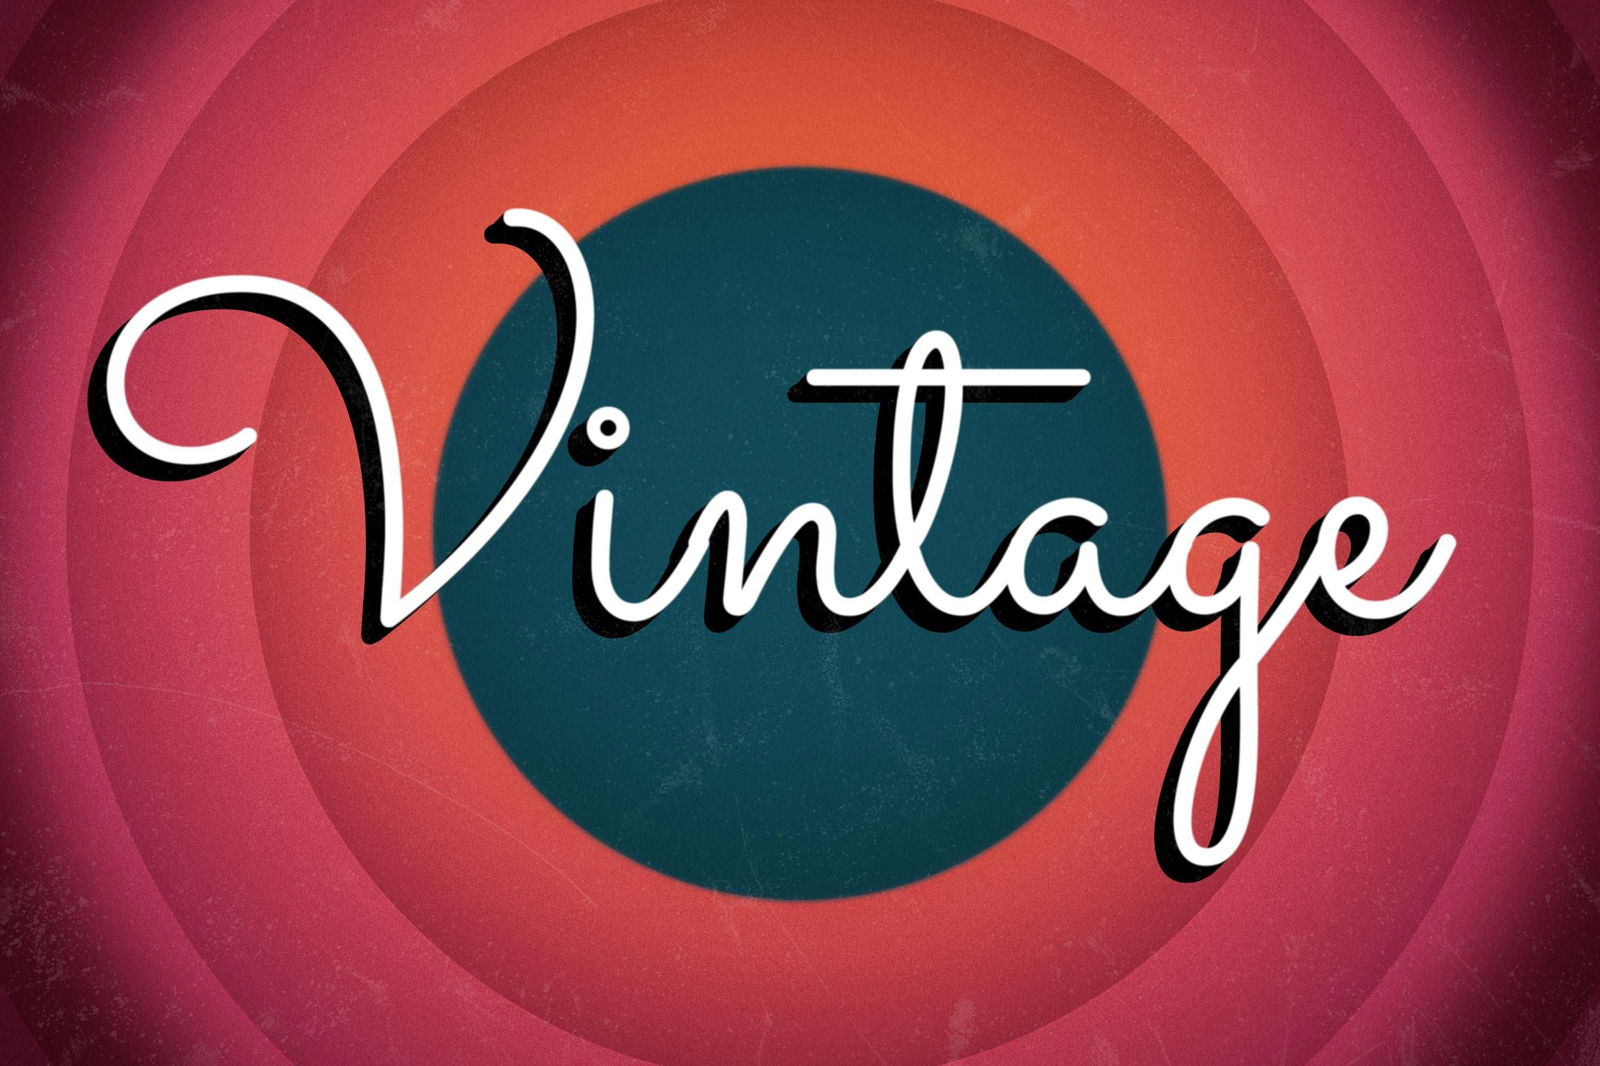 Retro & Vintage Font Bundle - Trustful Design